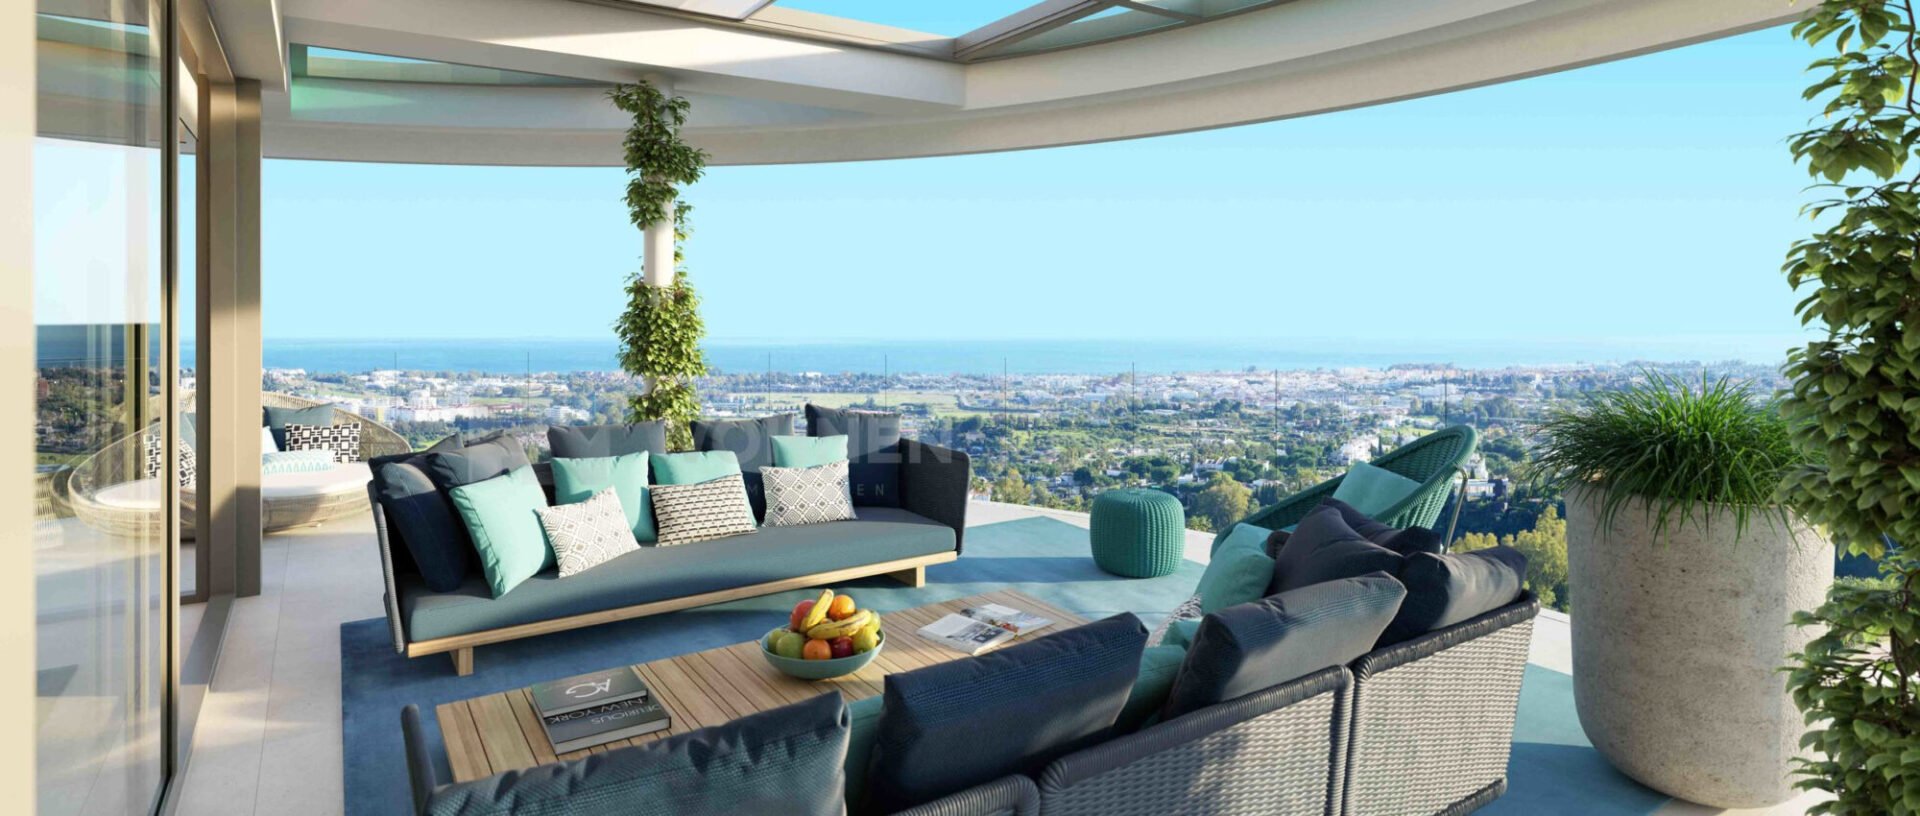 Apartment mit herrlichem Panoramablick auf das Meer